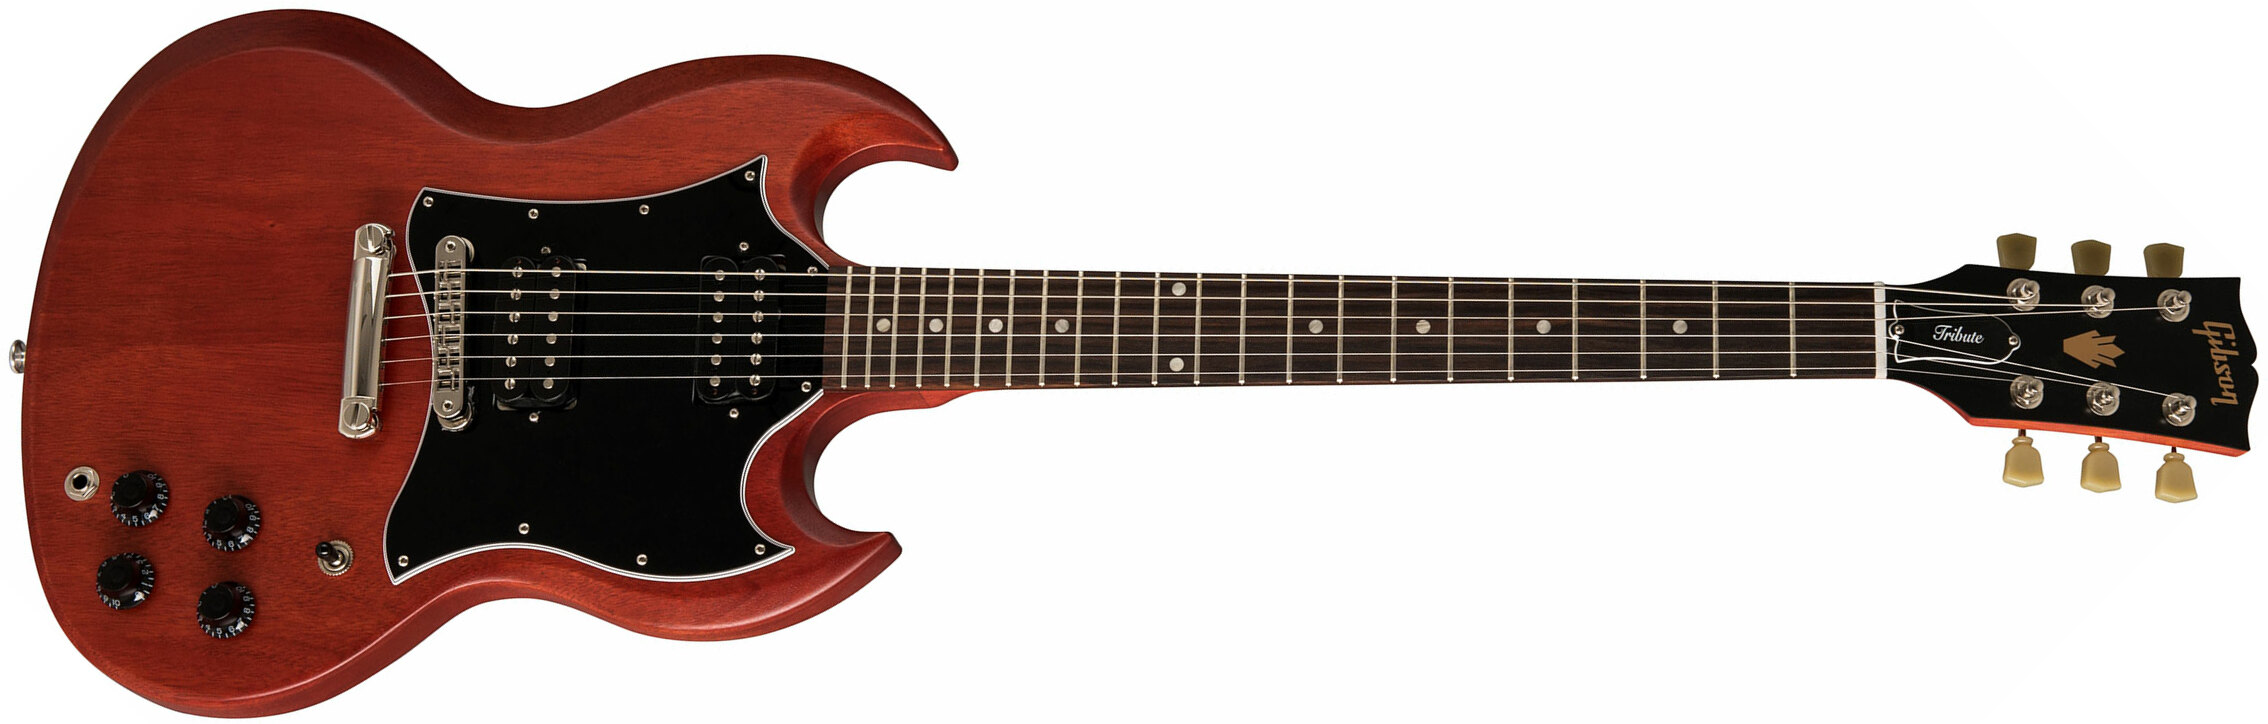 Gibson Sg Standard Tribute - Vintage Cherry Satin - Guitarra eléctrica de doble corte - Main picture